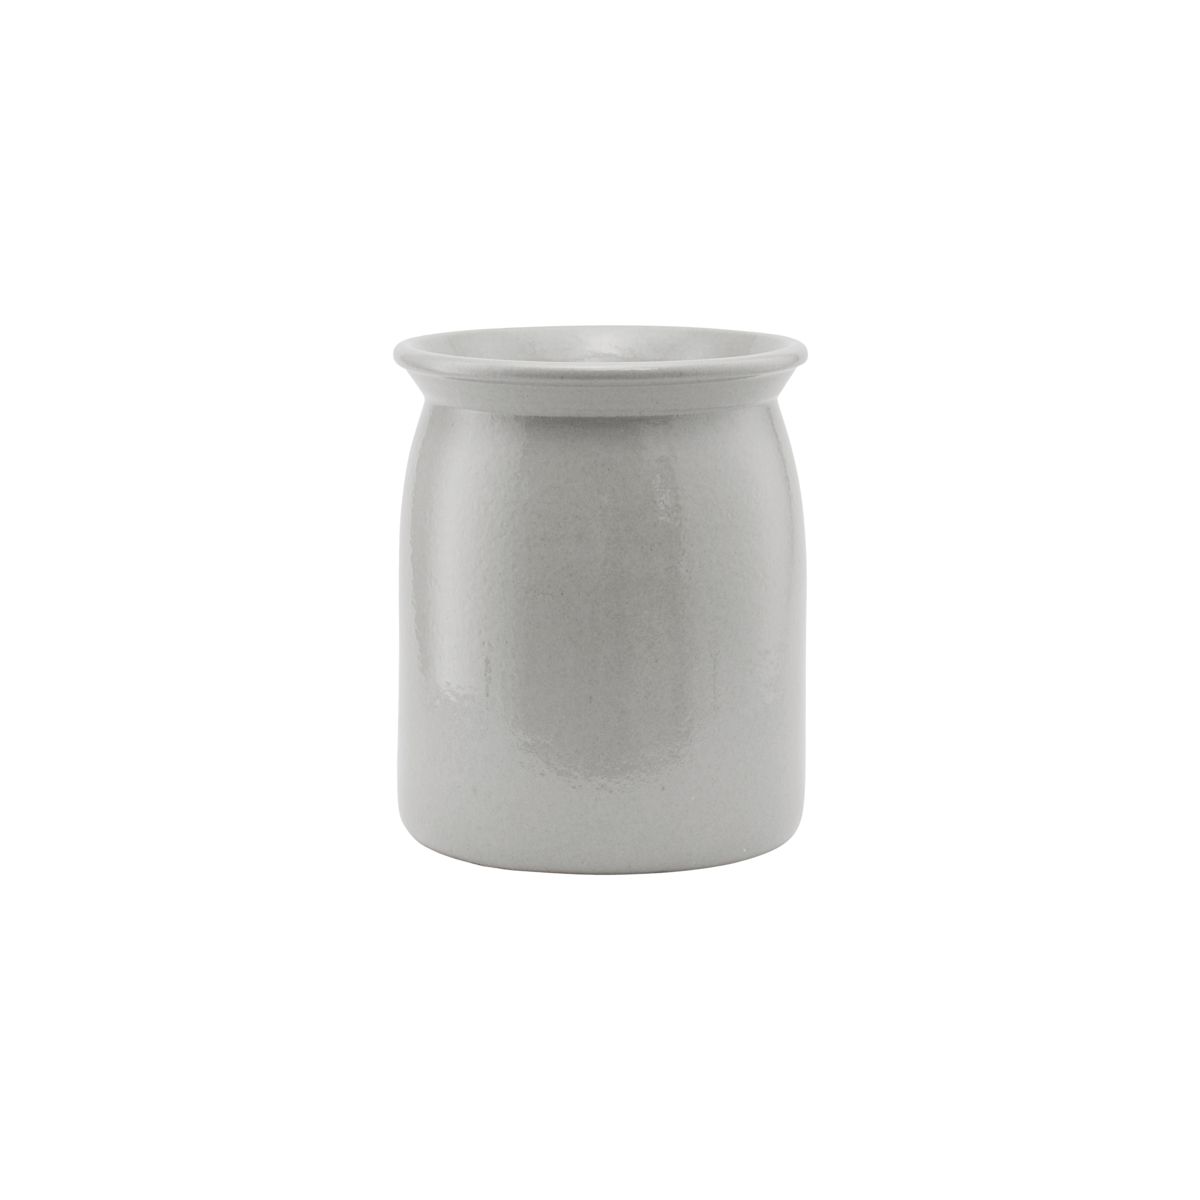 Billede af Keramikkrukke, Shellish grey - 24 cm hos ModernHouse.dk